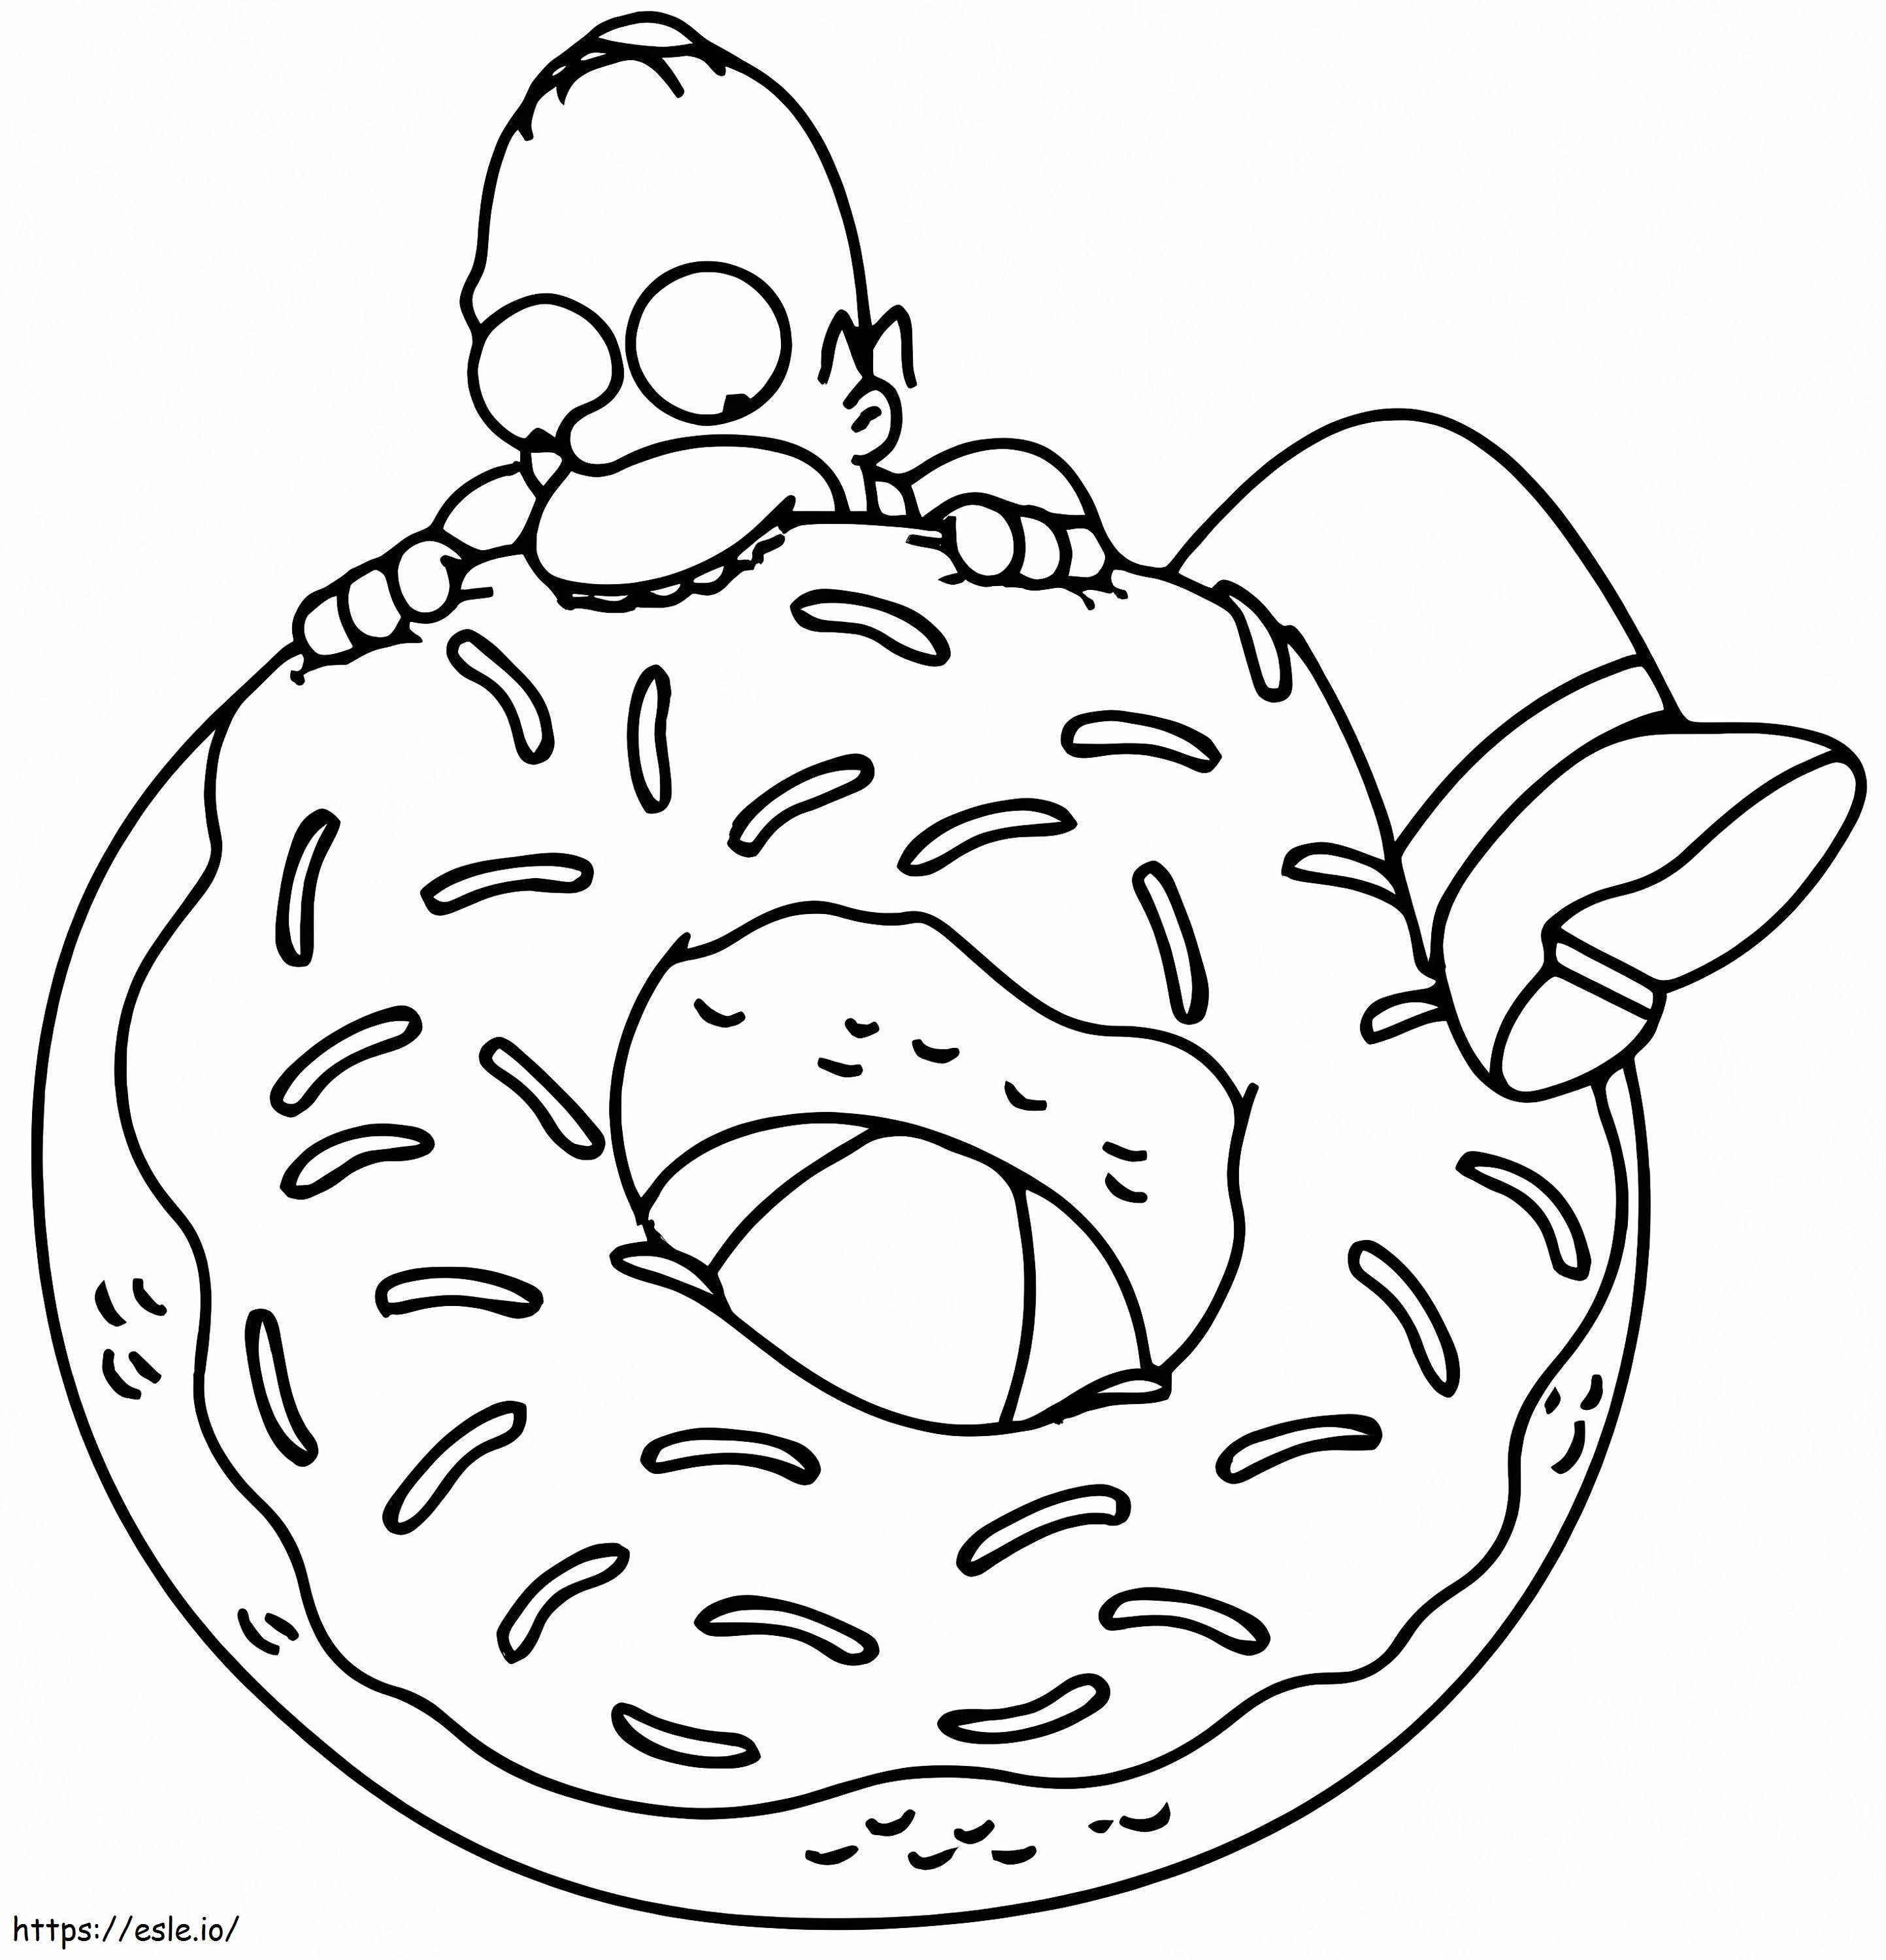 Homer Simpson mâncând gogoși de colorat